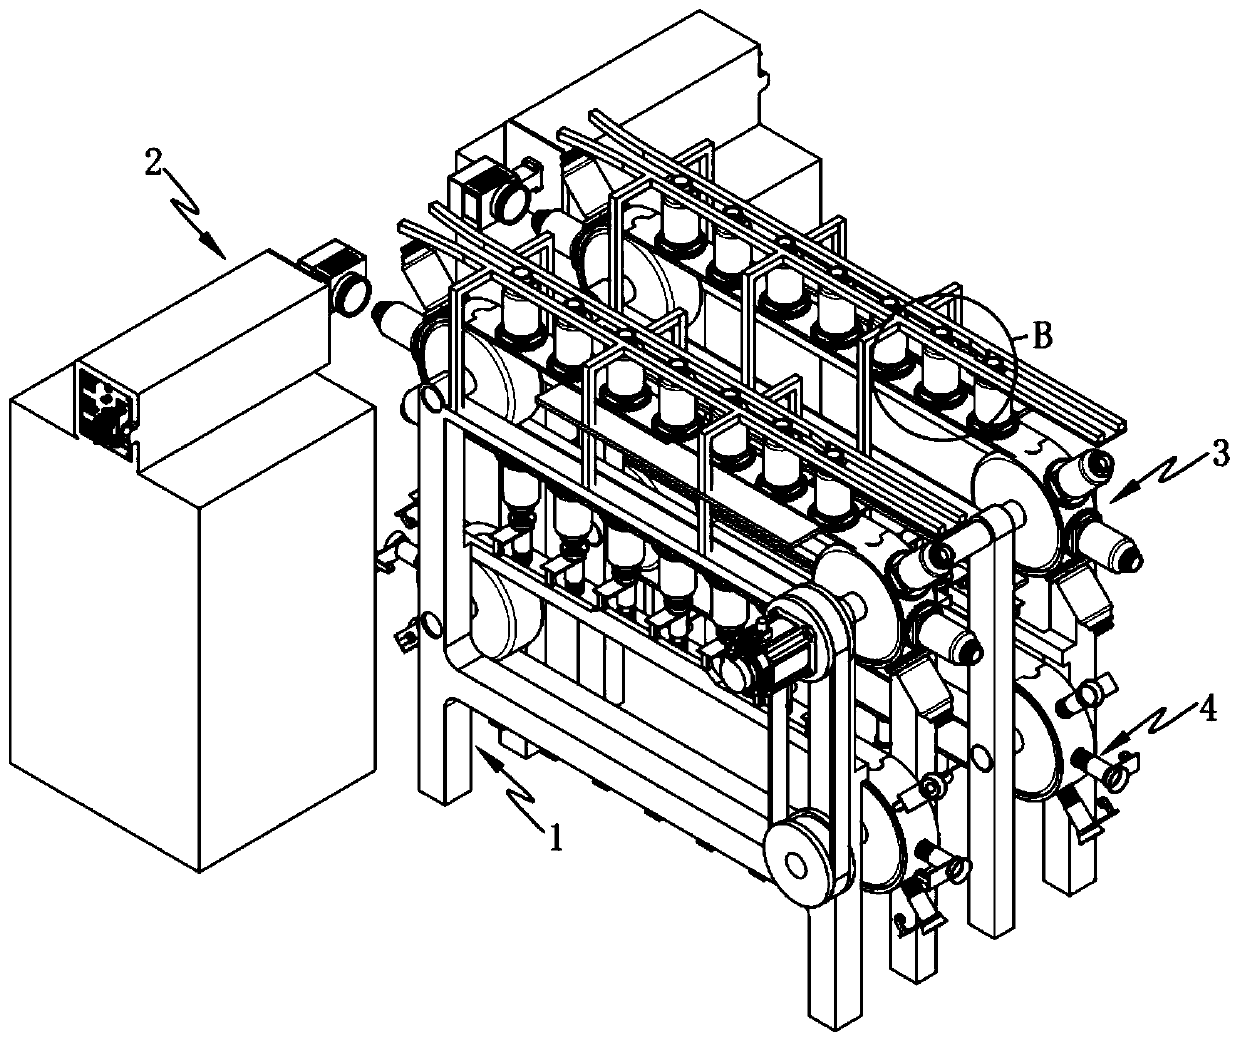 Full-automatic cover screwing laser radium emission coding method